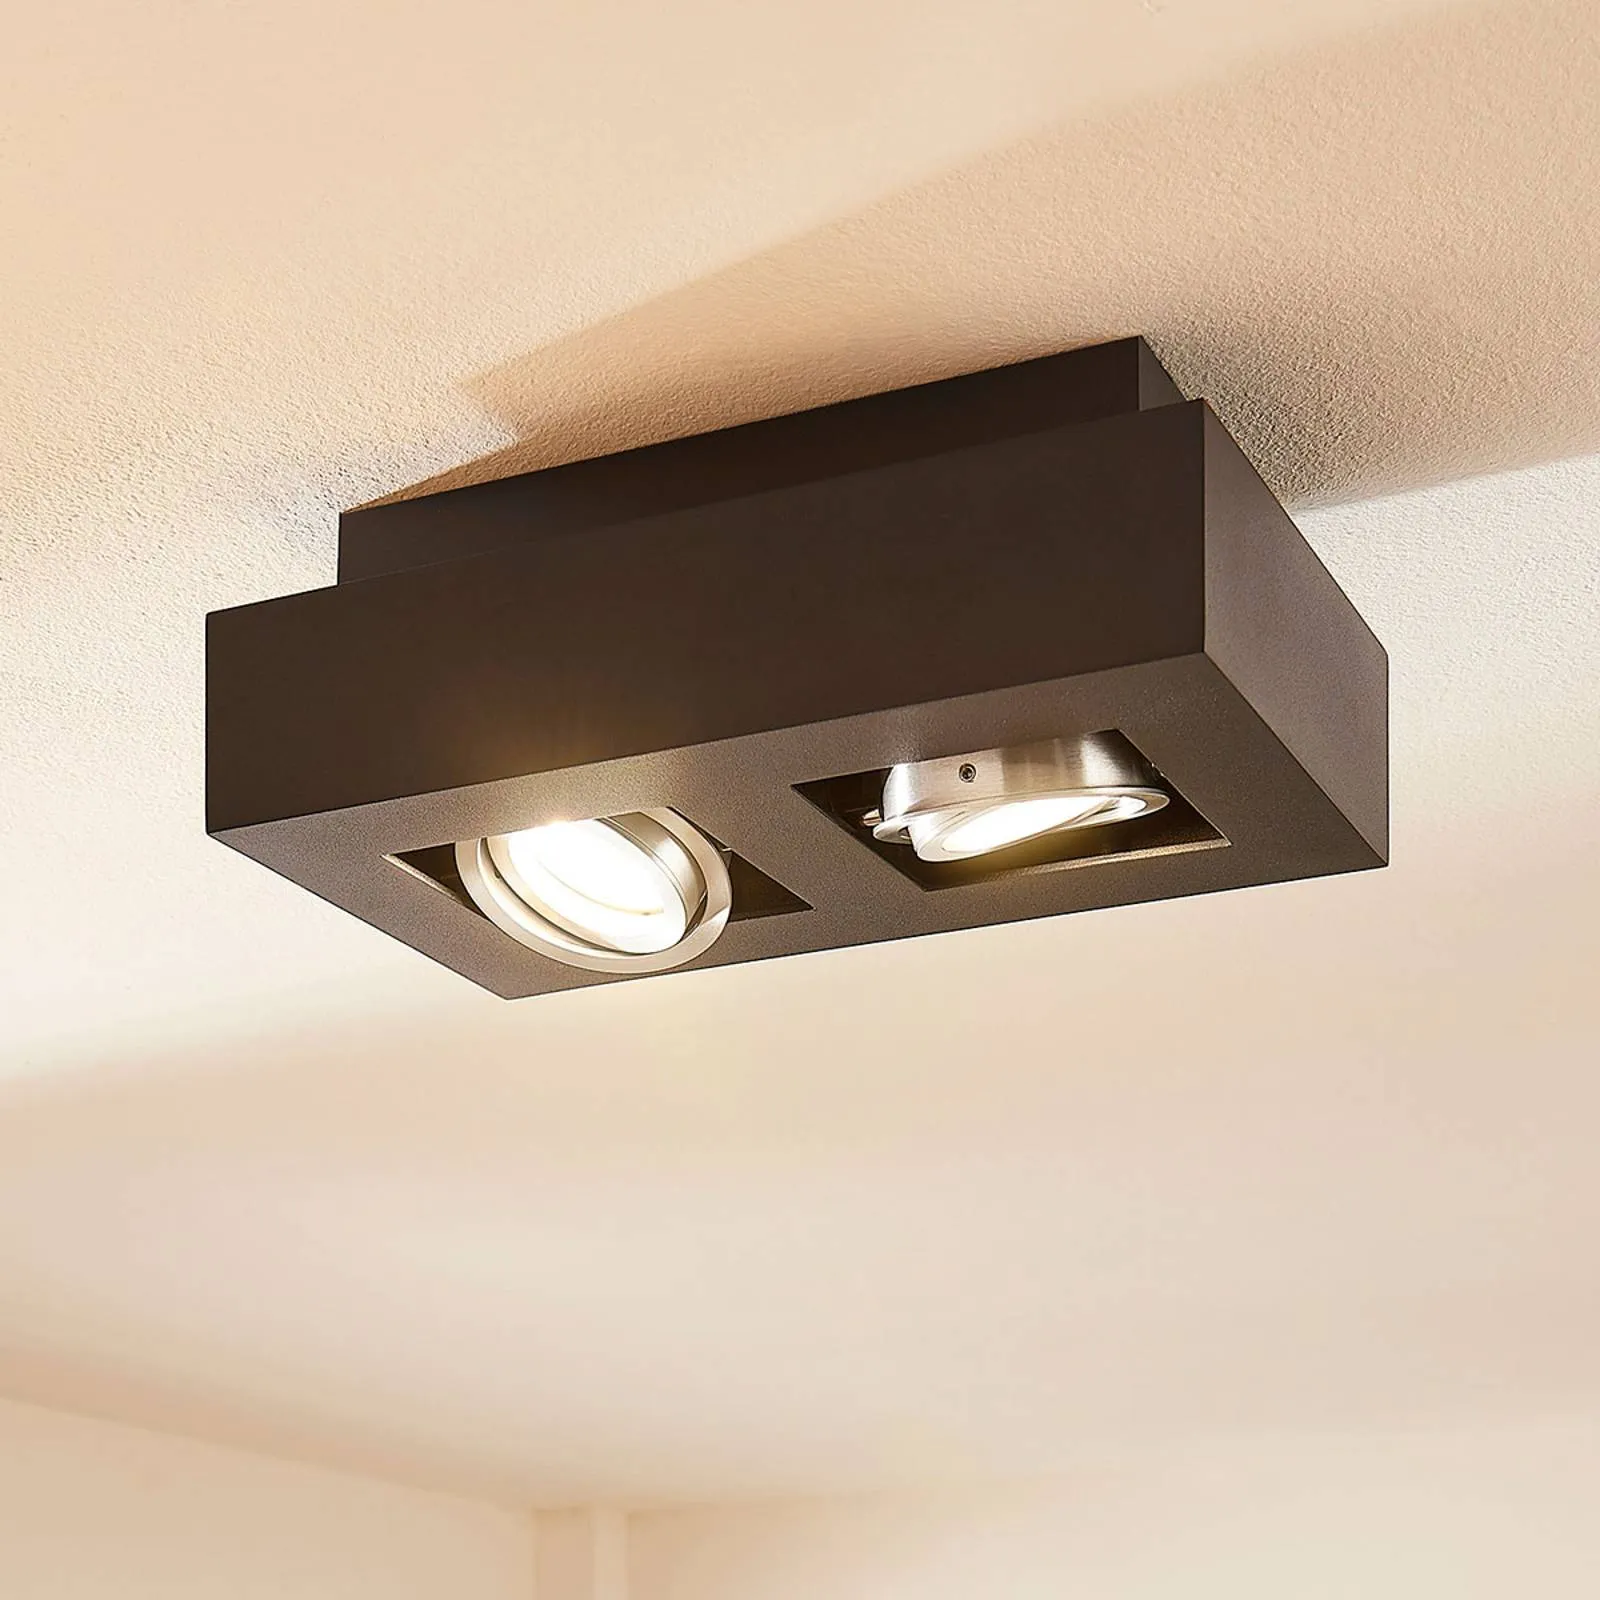 Vince LED ceiling light, 25 x 14 cm in black